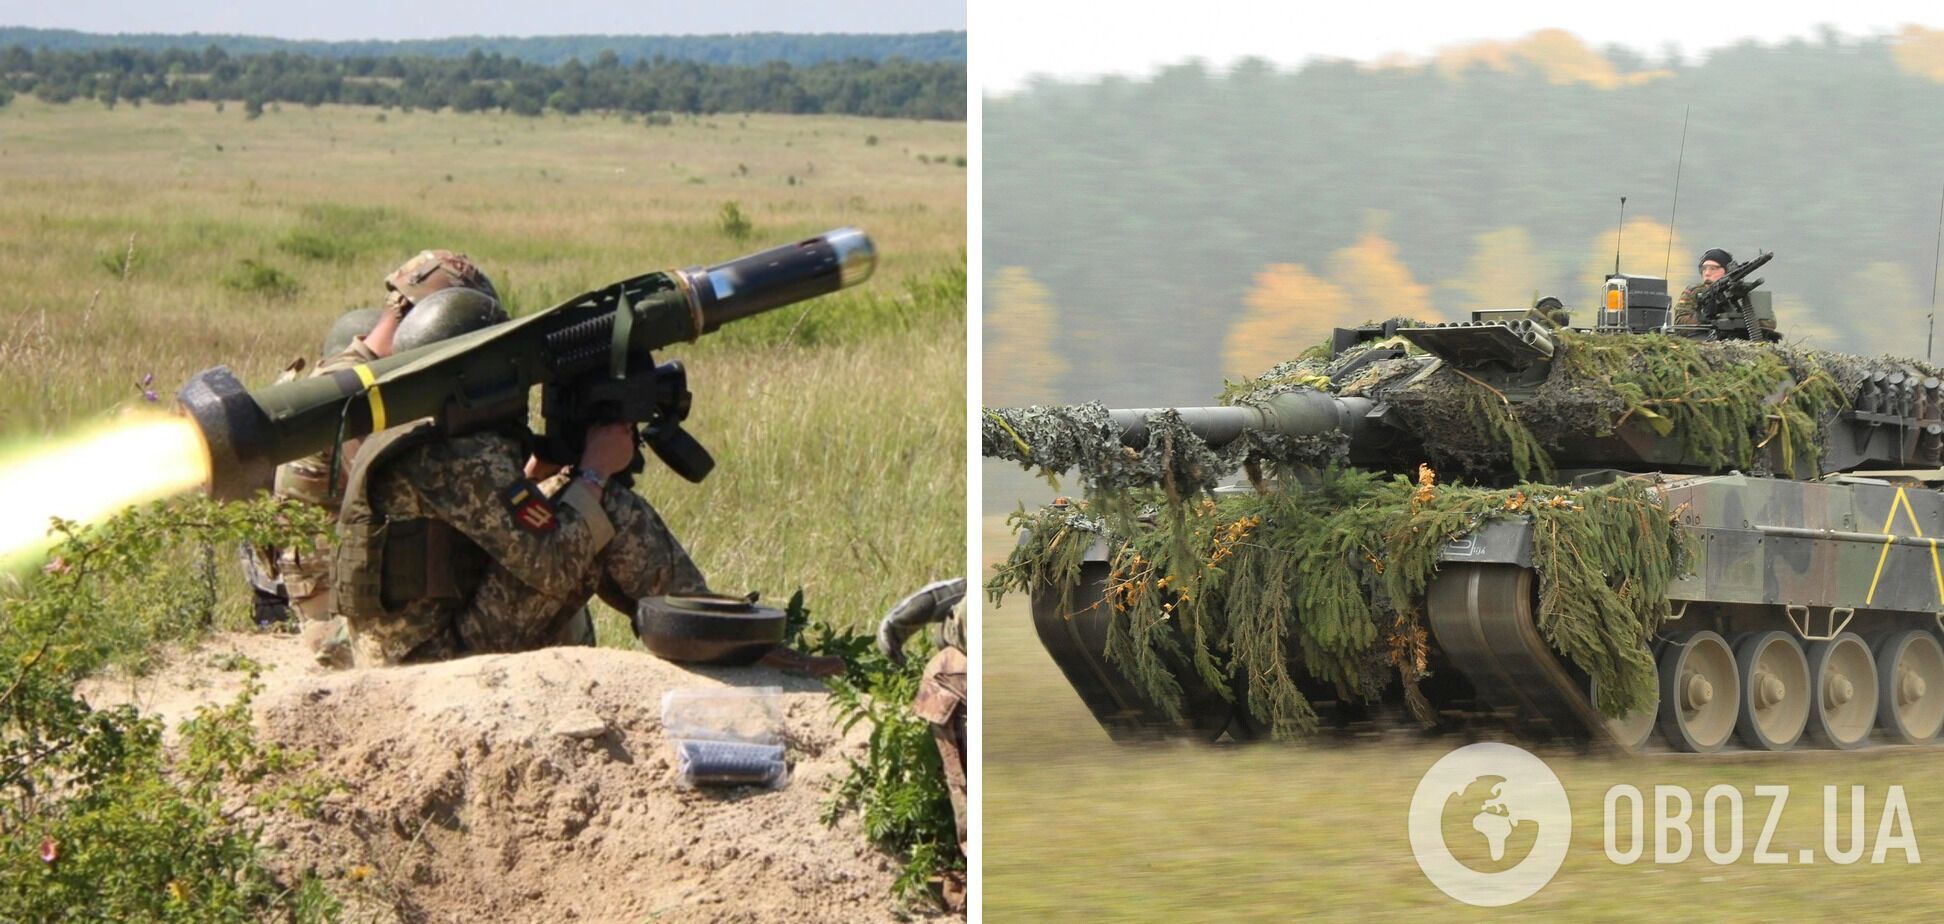 ПТРК Javelin и танк Leopard 2 в Украине